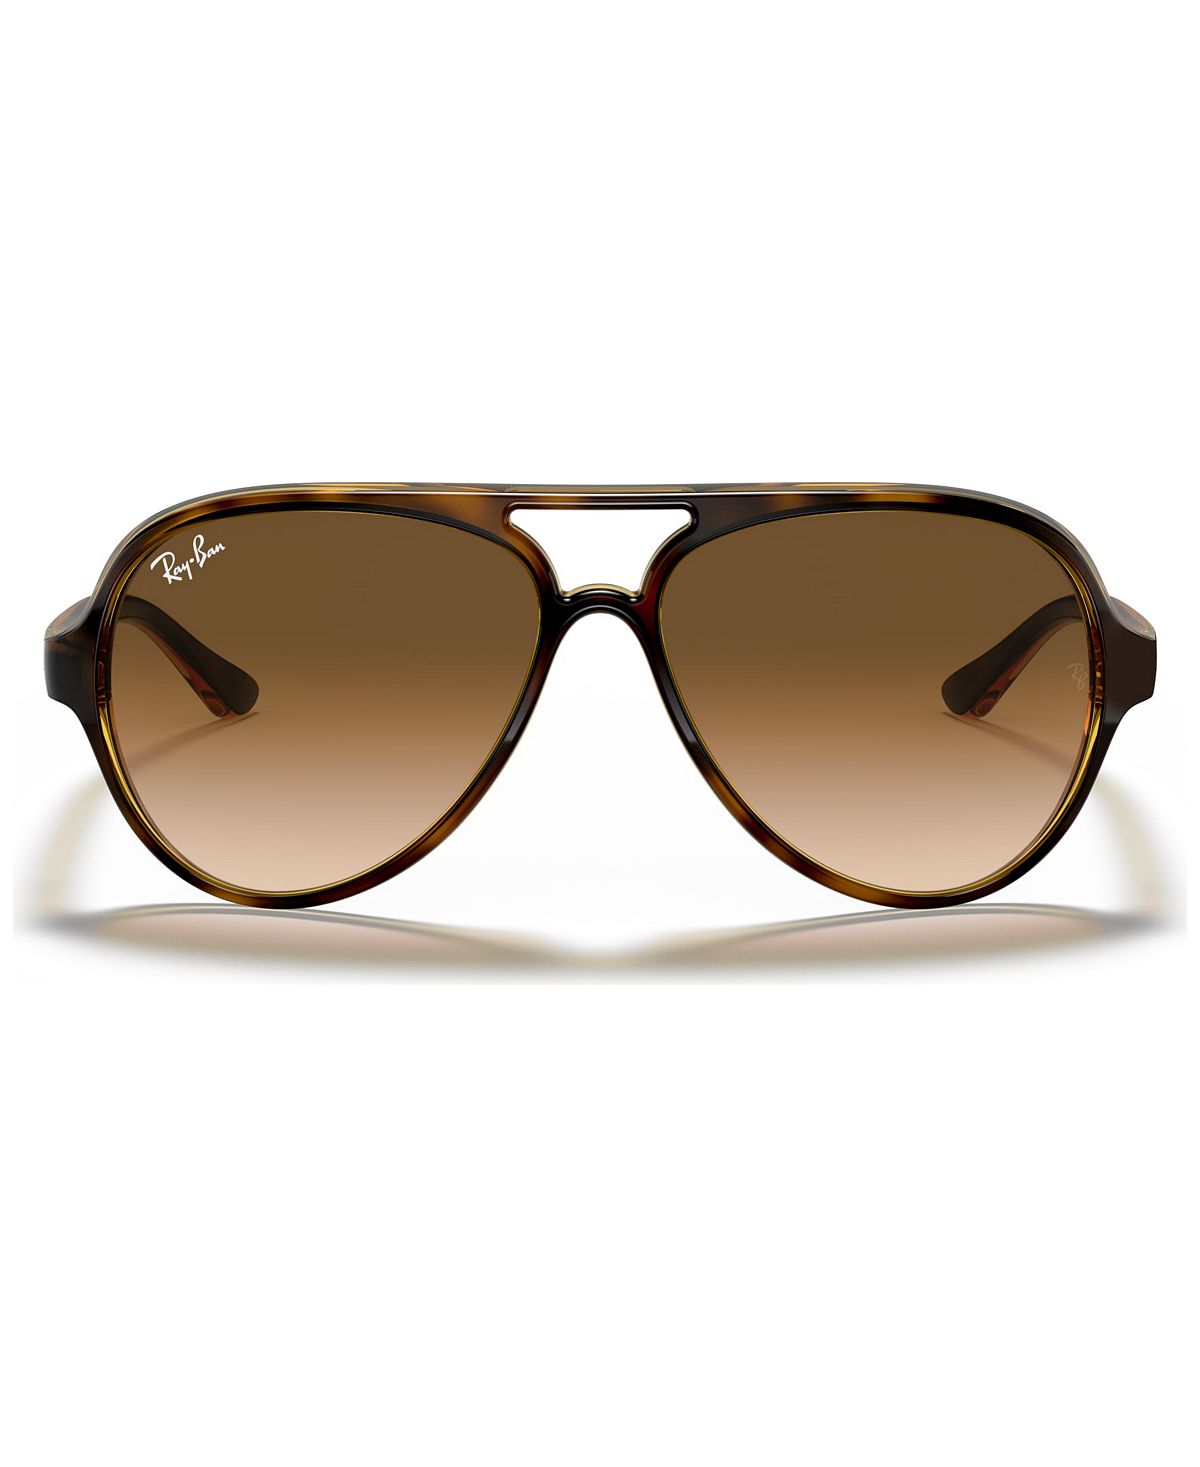 солнцезащитные очки ray ban авиаторы оправа металл градиентные с защитой от уф серебряный Солнцезащитные очки, rb4125 cats 5000 Ray-Ban